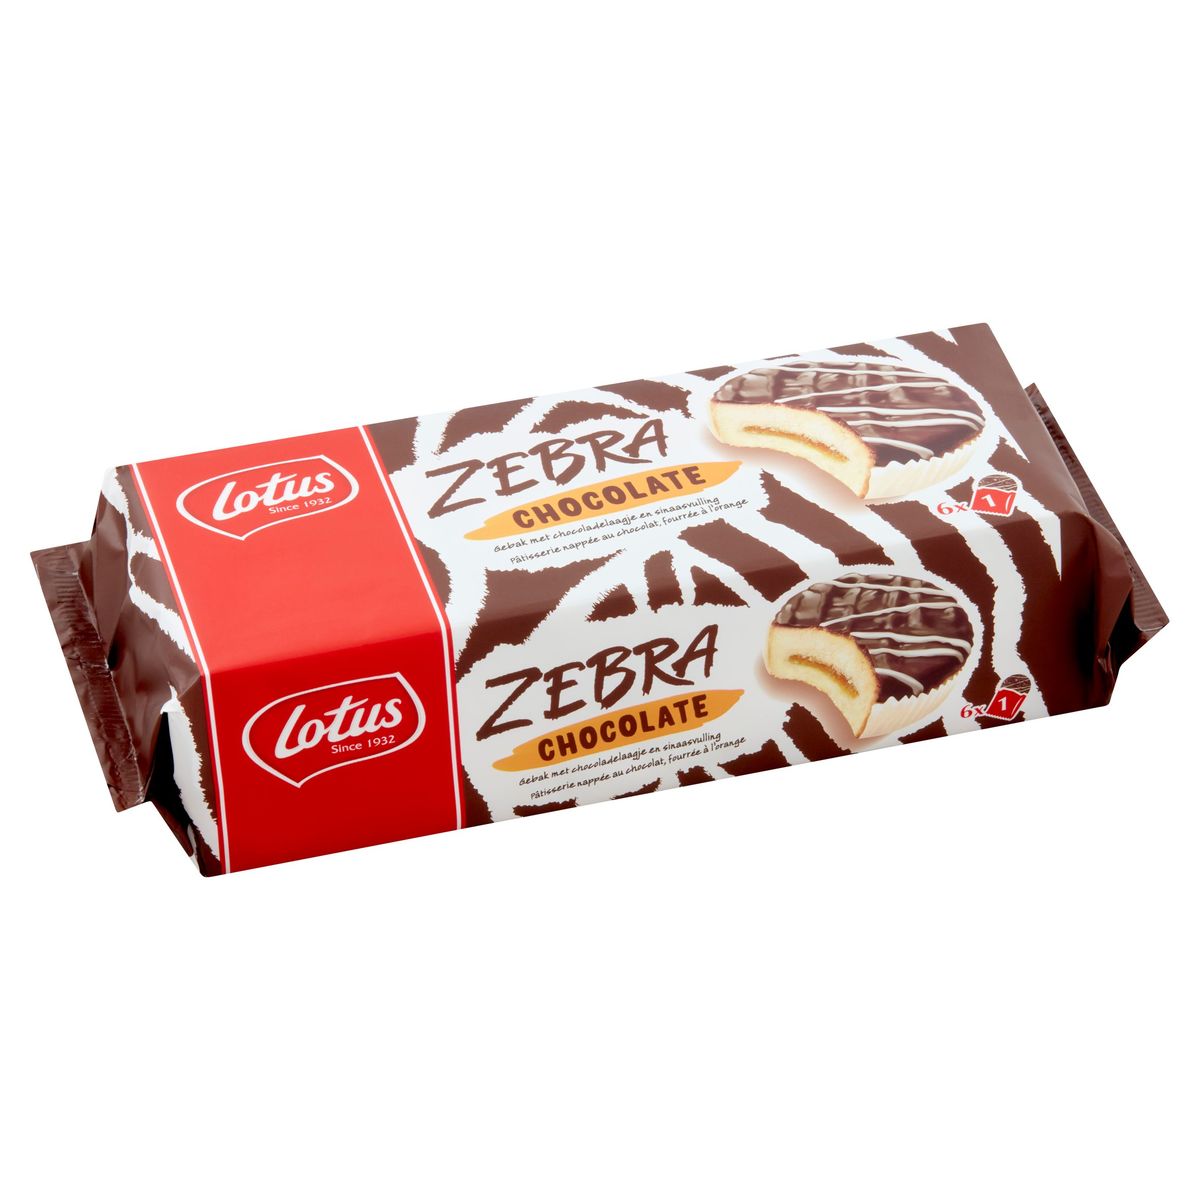 Lotus Zebra Chocolate met Chocoladelaagje en Sinaasvulling 6 x 38.5 g